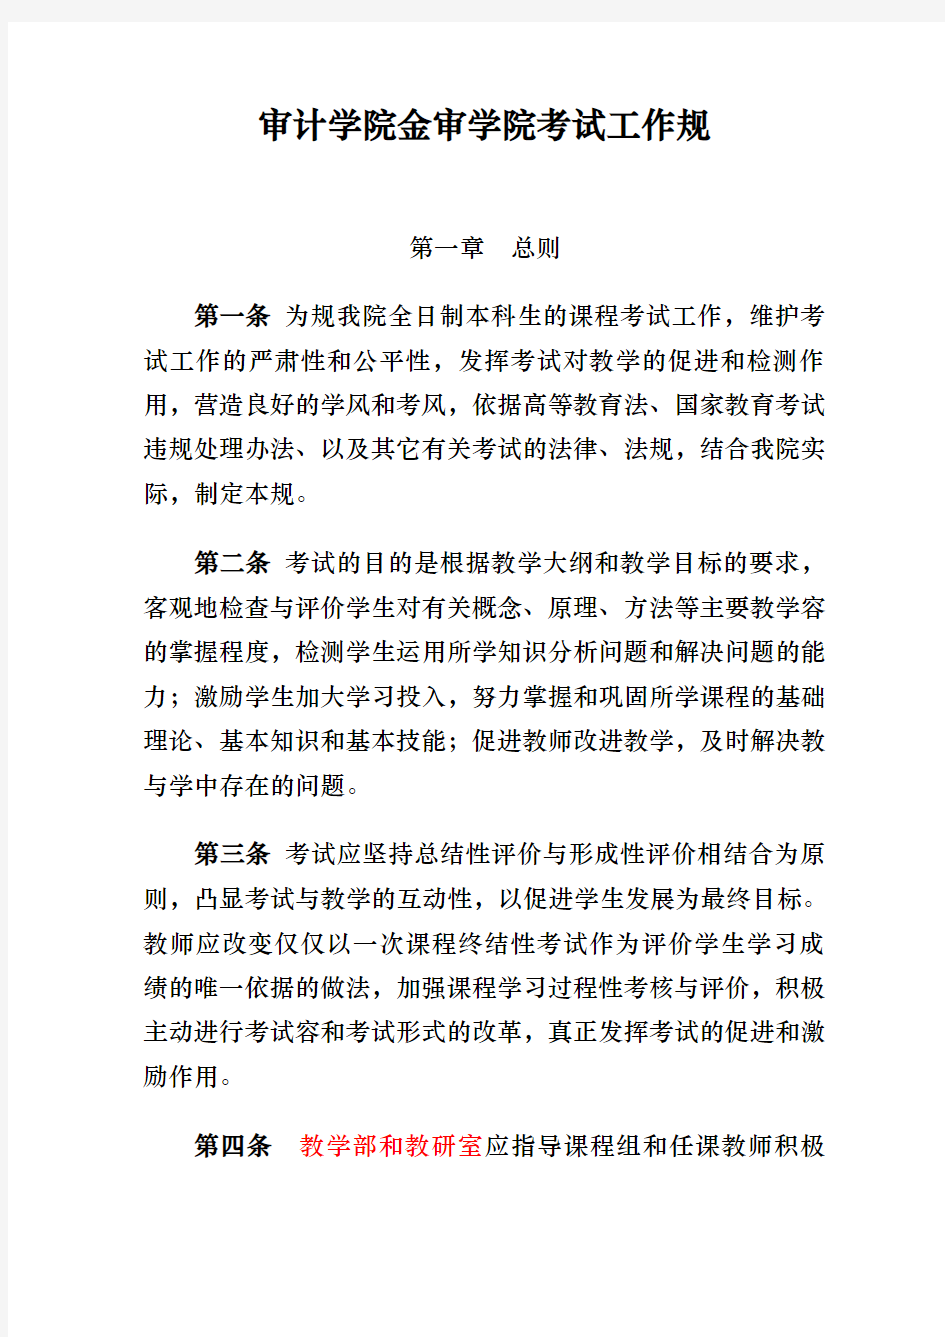 南京审计学院金审学院考试工作规范标准